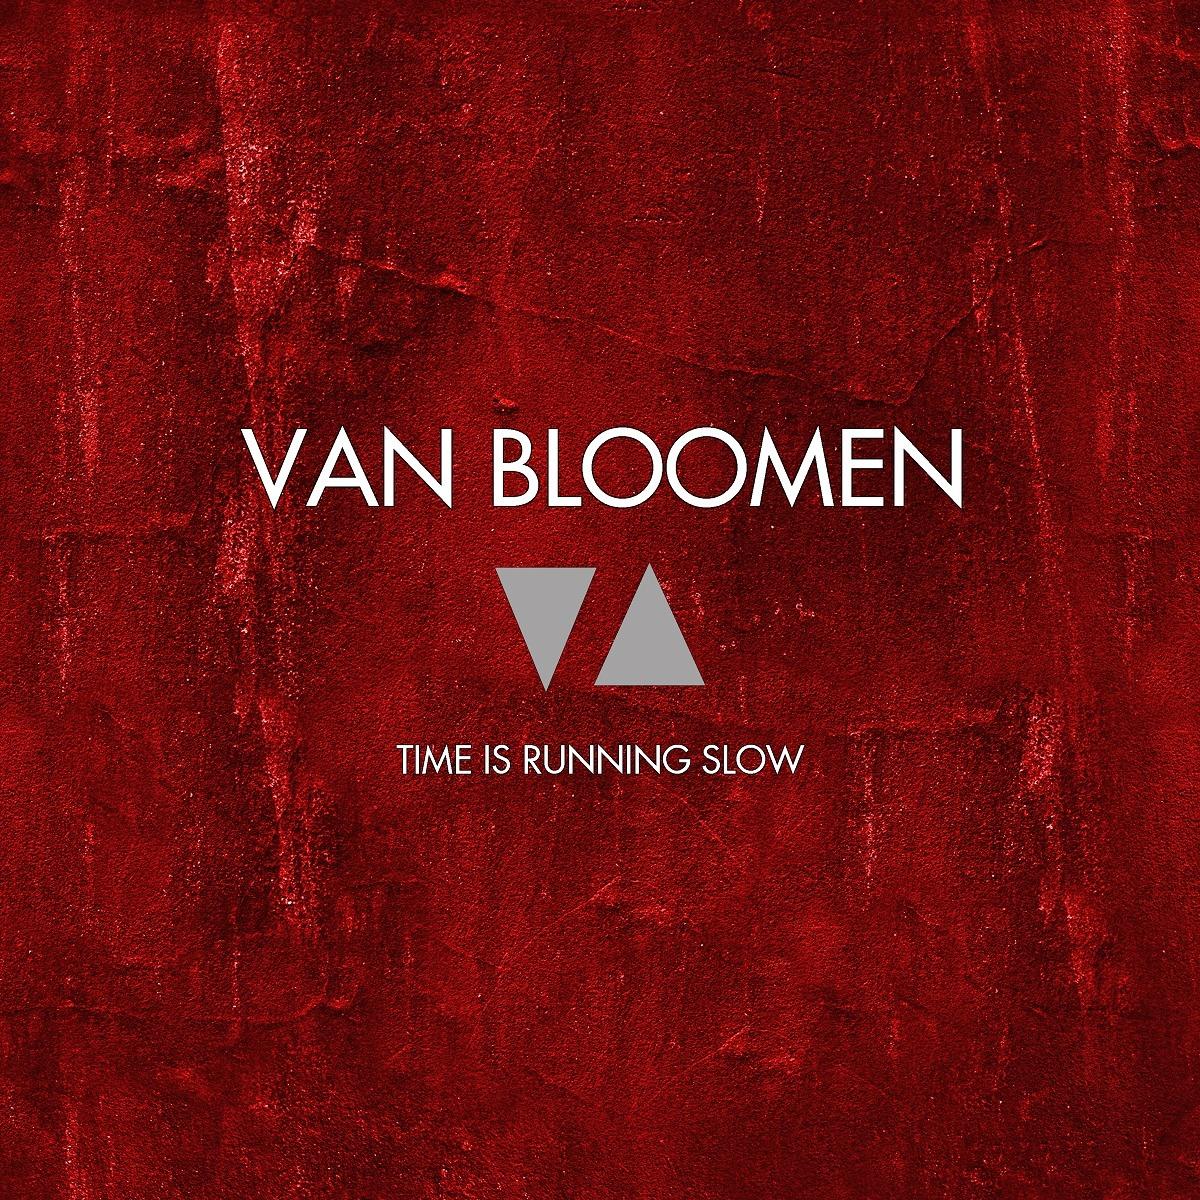 VAN BLOOMEN releases new album, “Time is running slow”